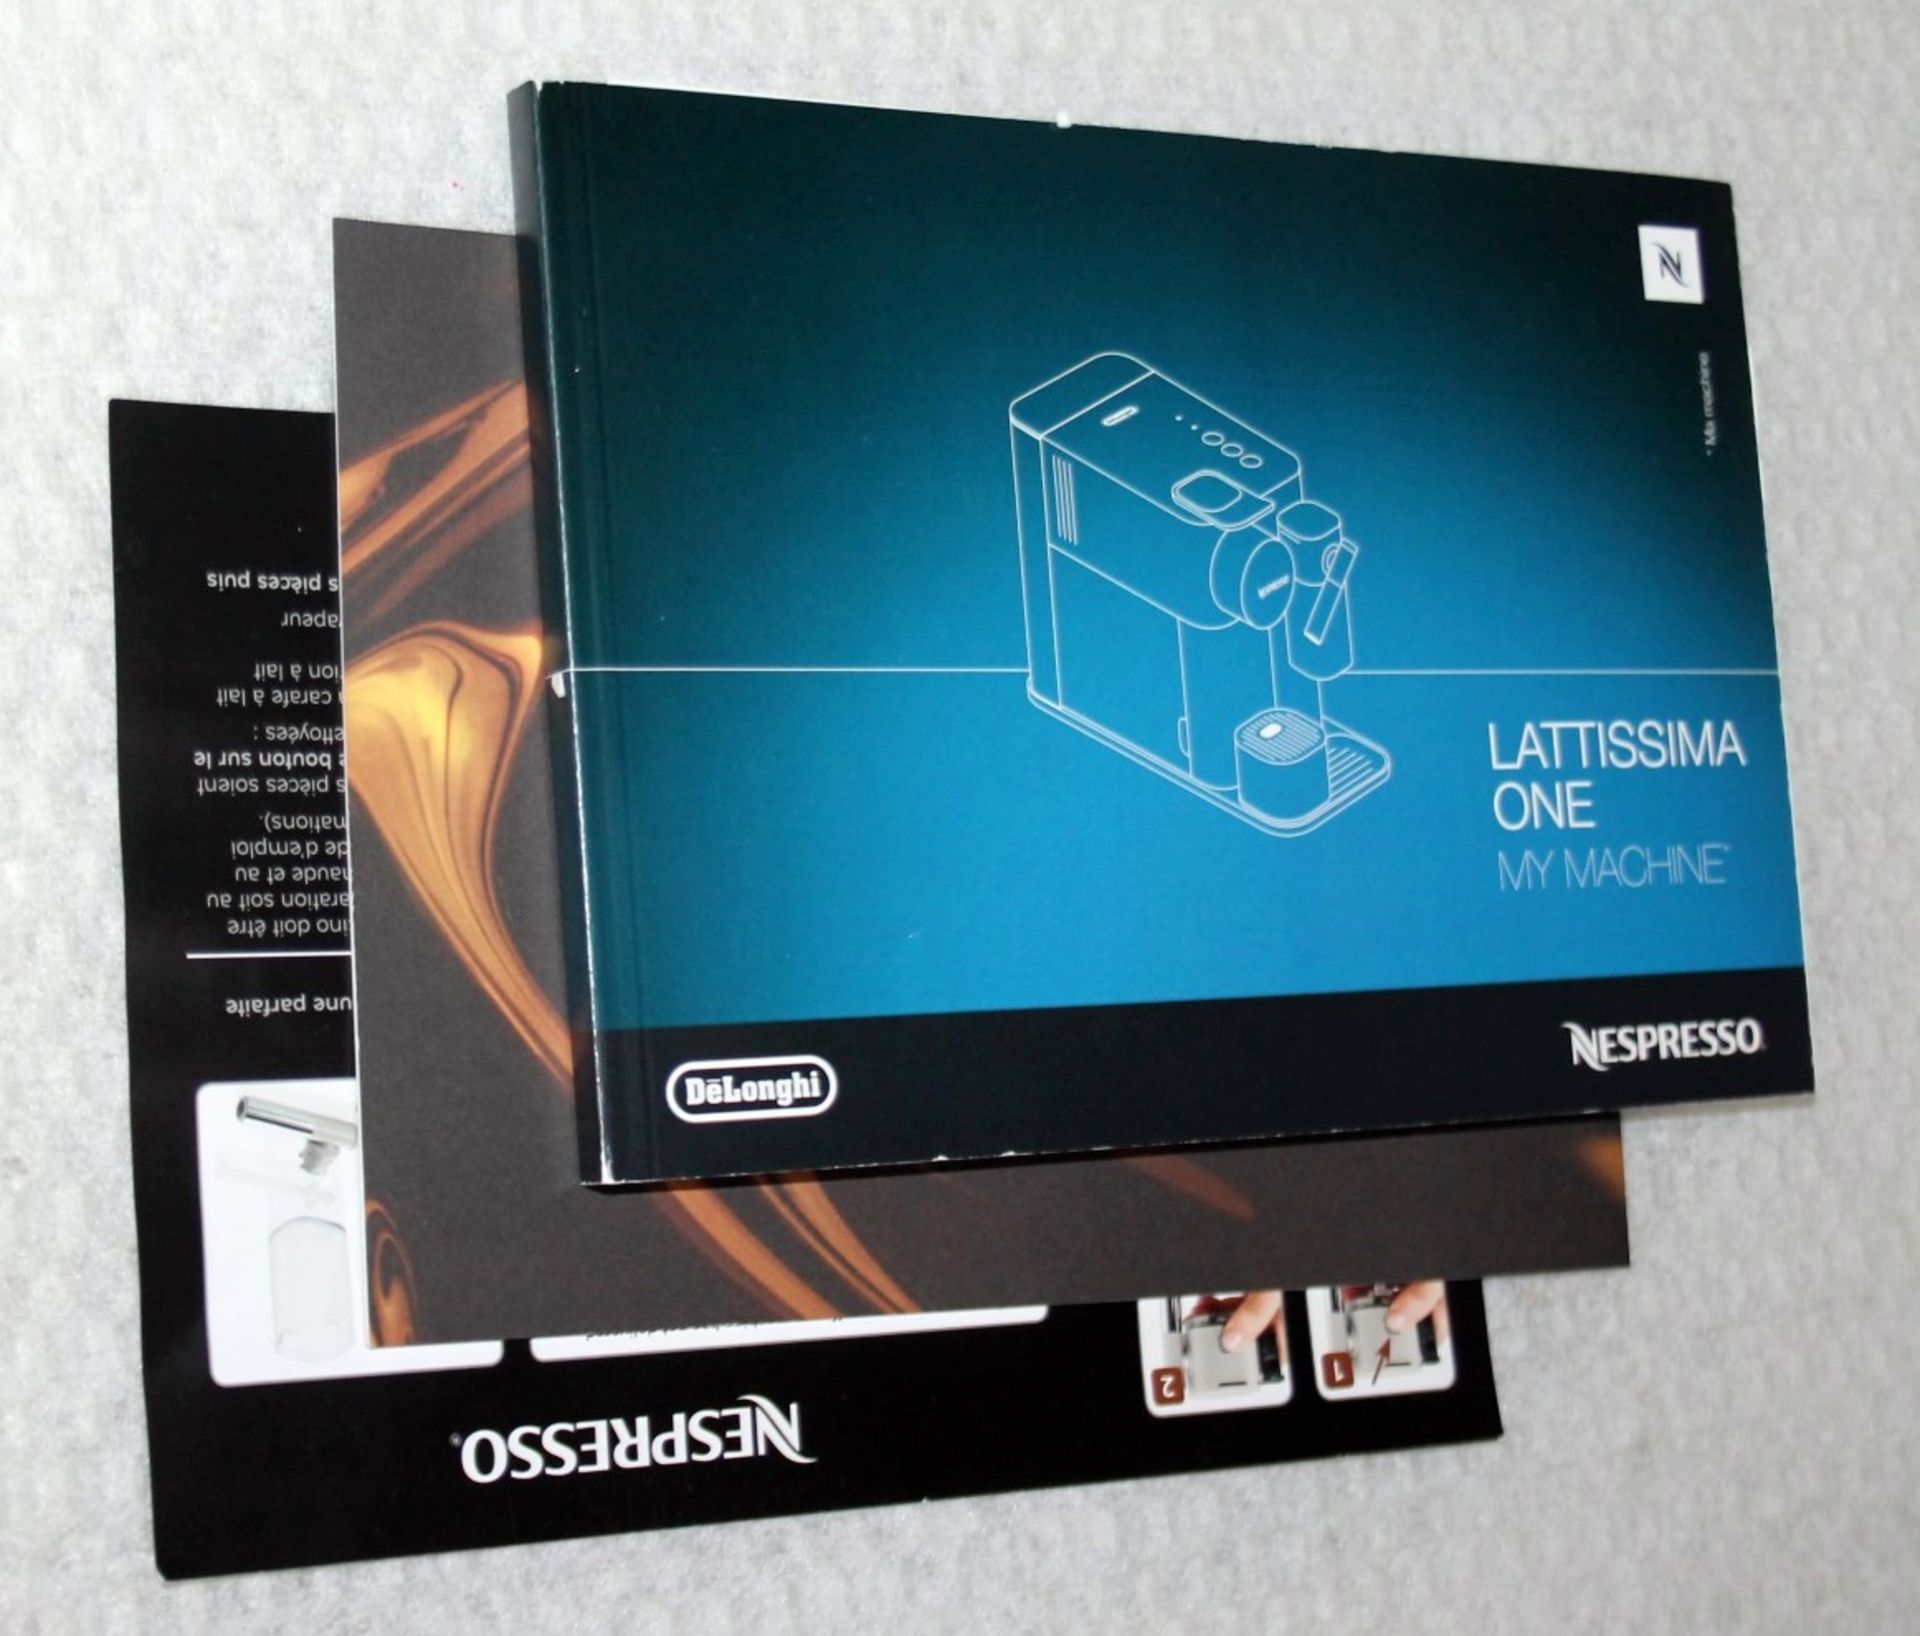 1 x DeLonghi Lattissima One Nespresso Coffee Machine - Original Price £258.00 - Boxed - Image 9 of 18